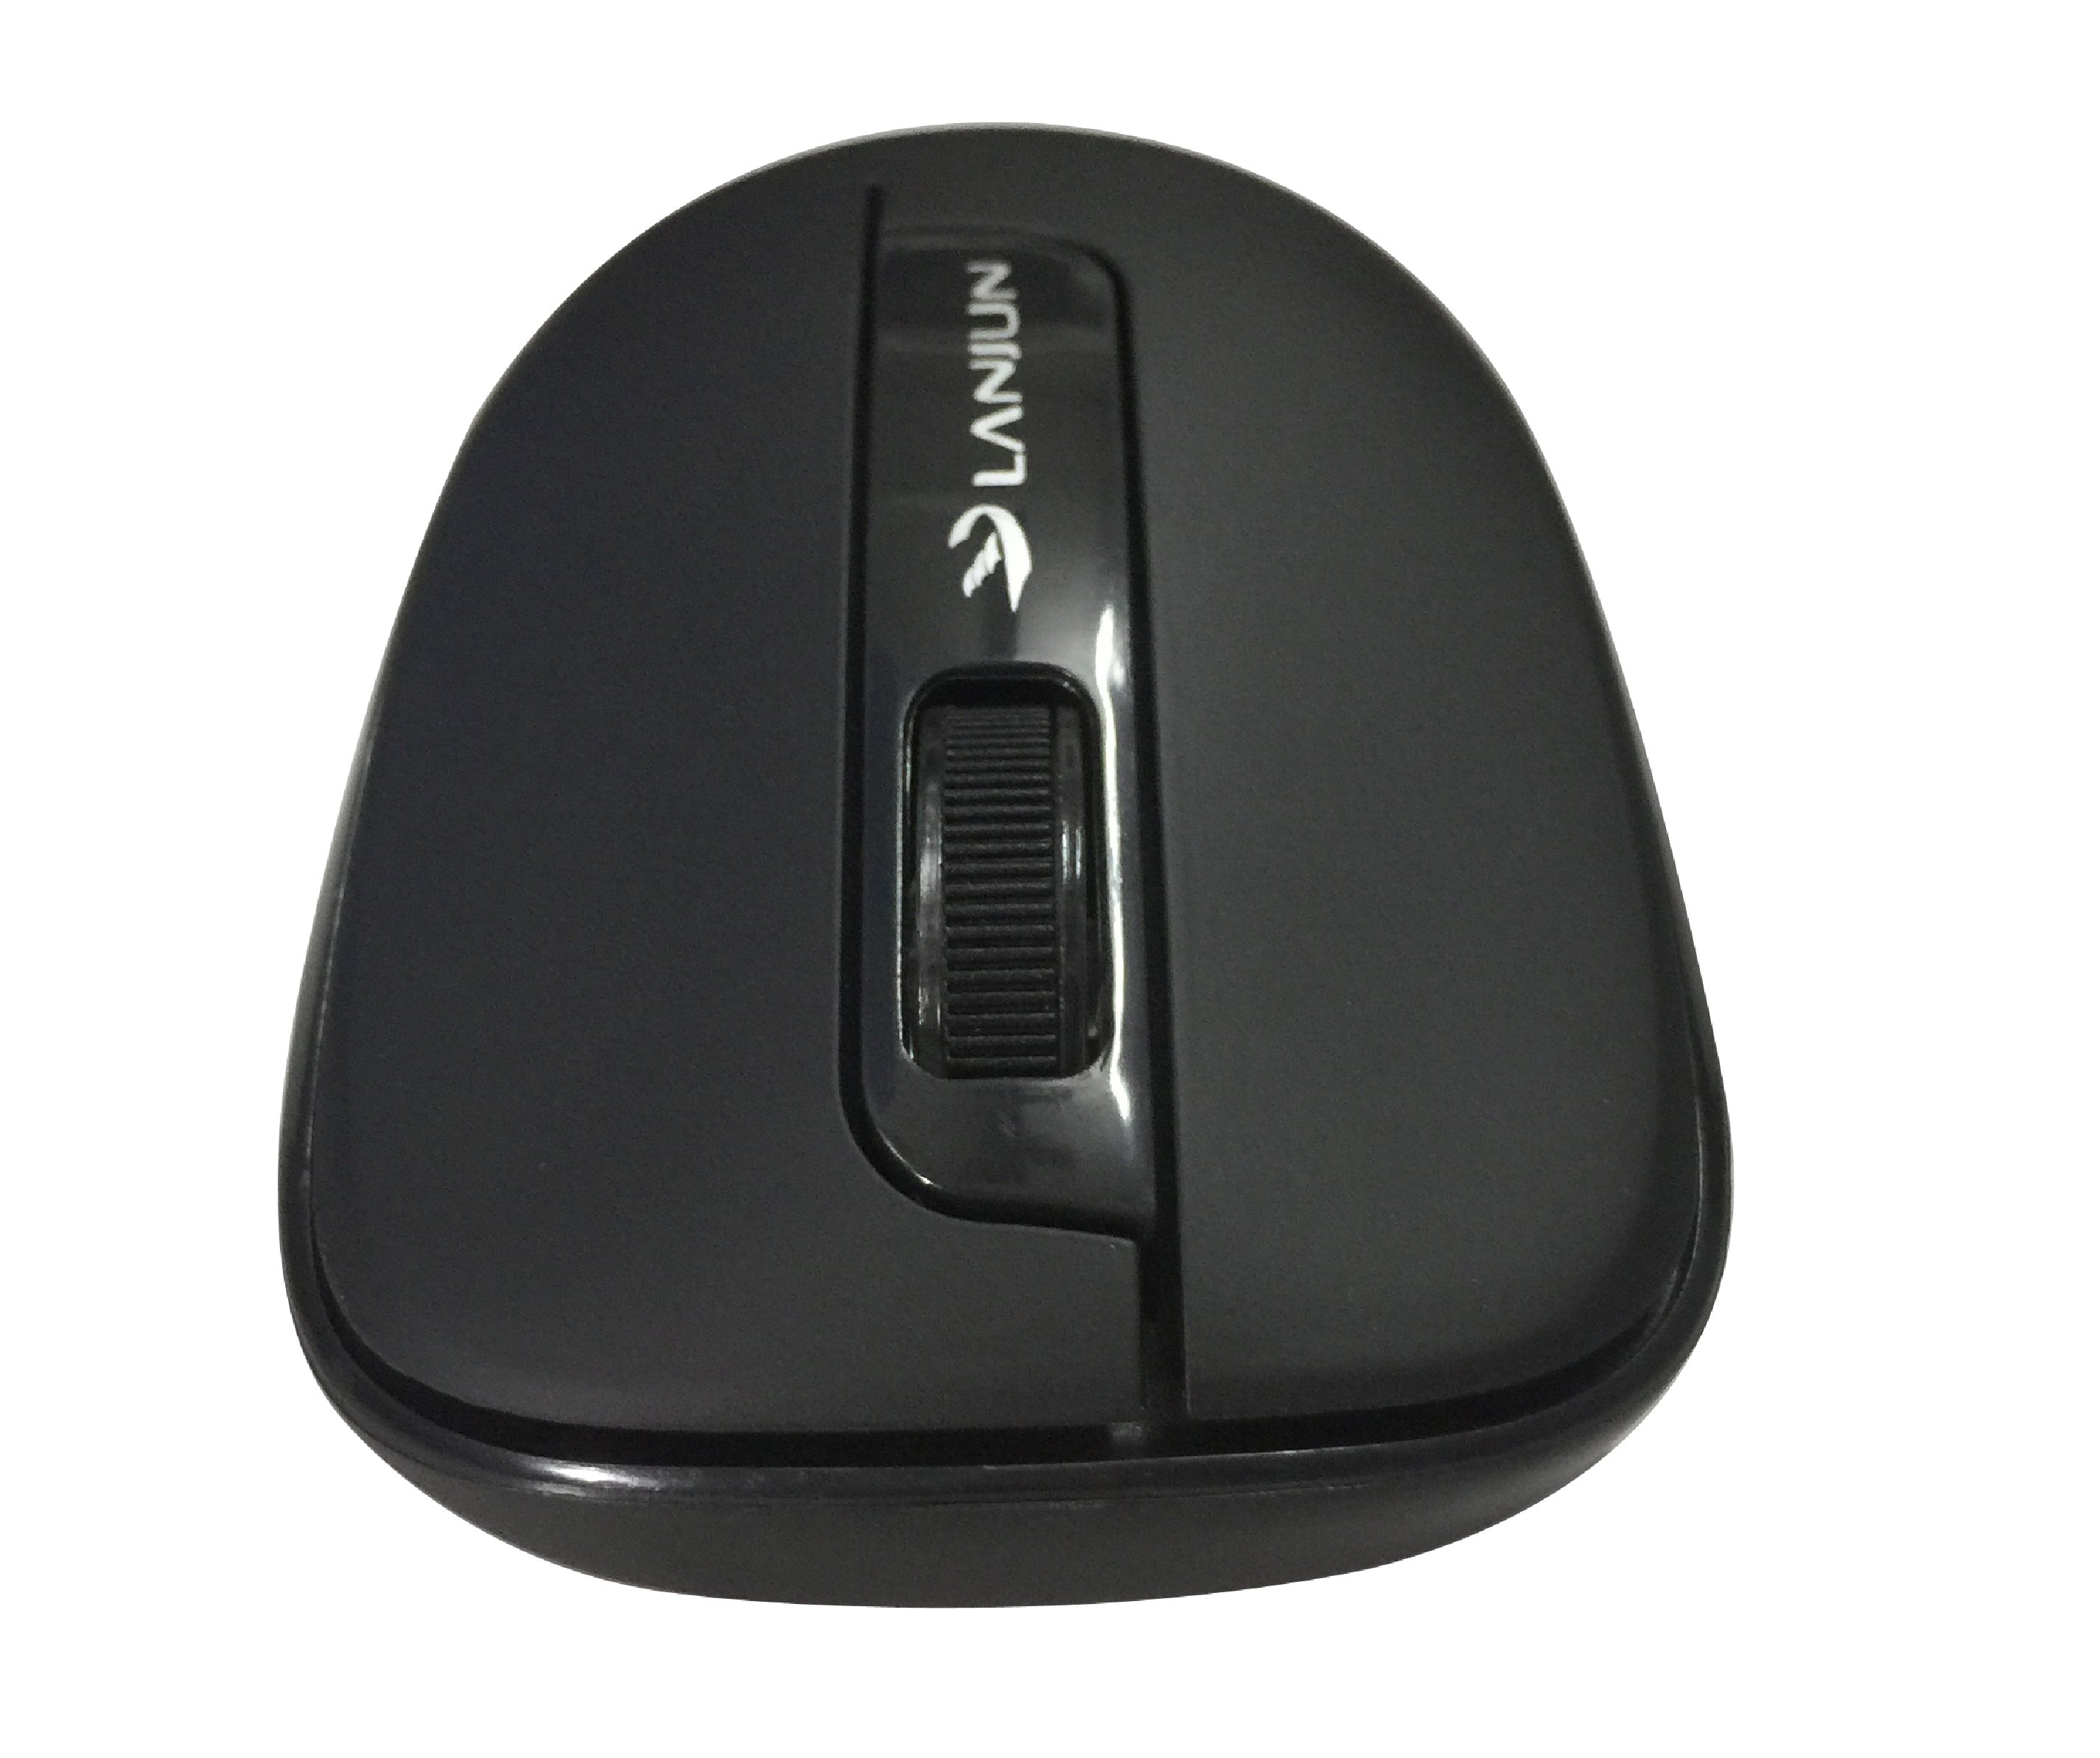 Mouse Lanjun WM1213 Wireless Black